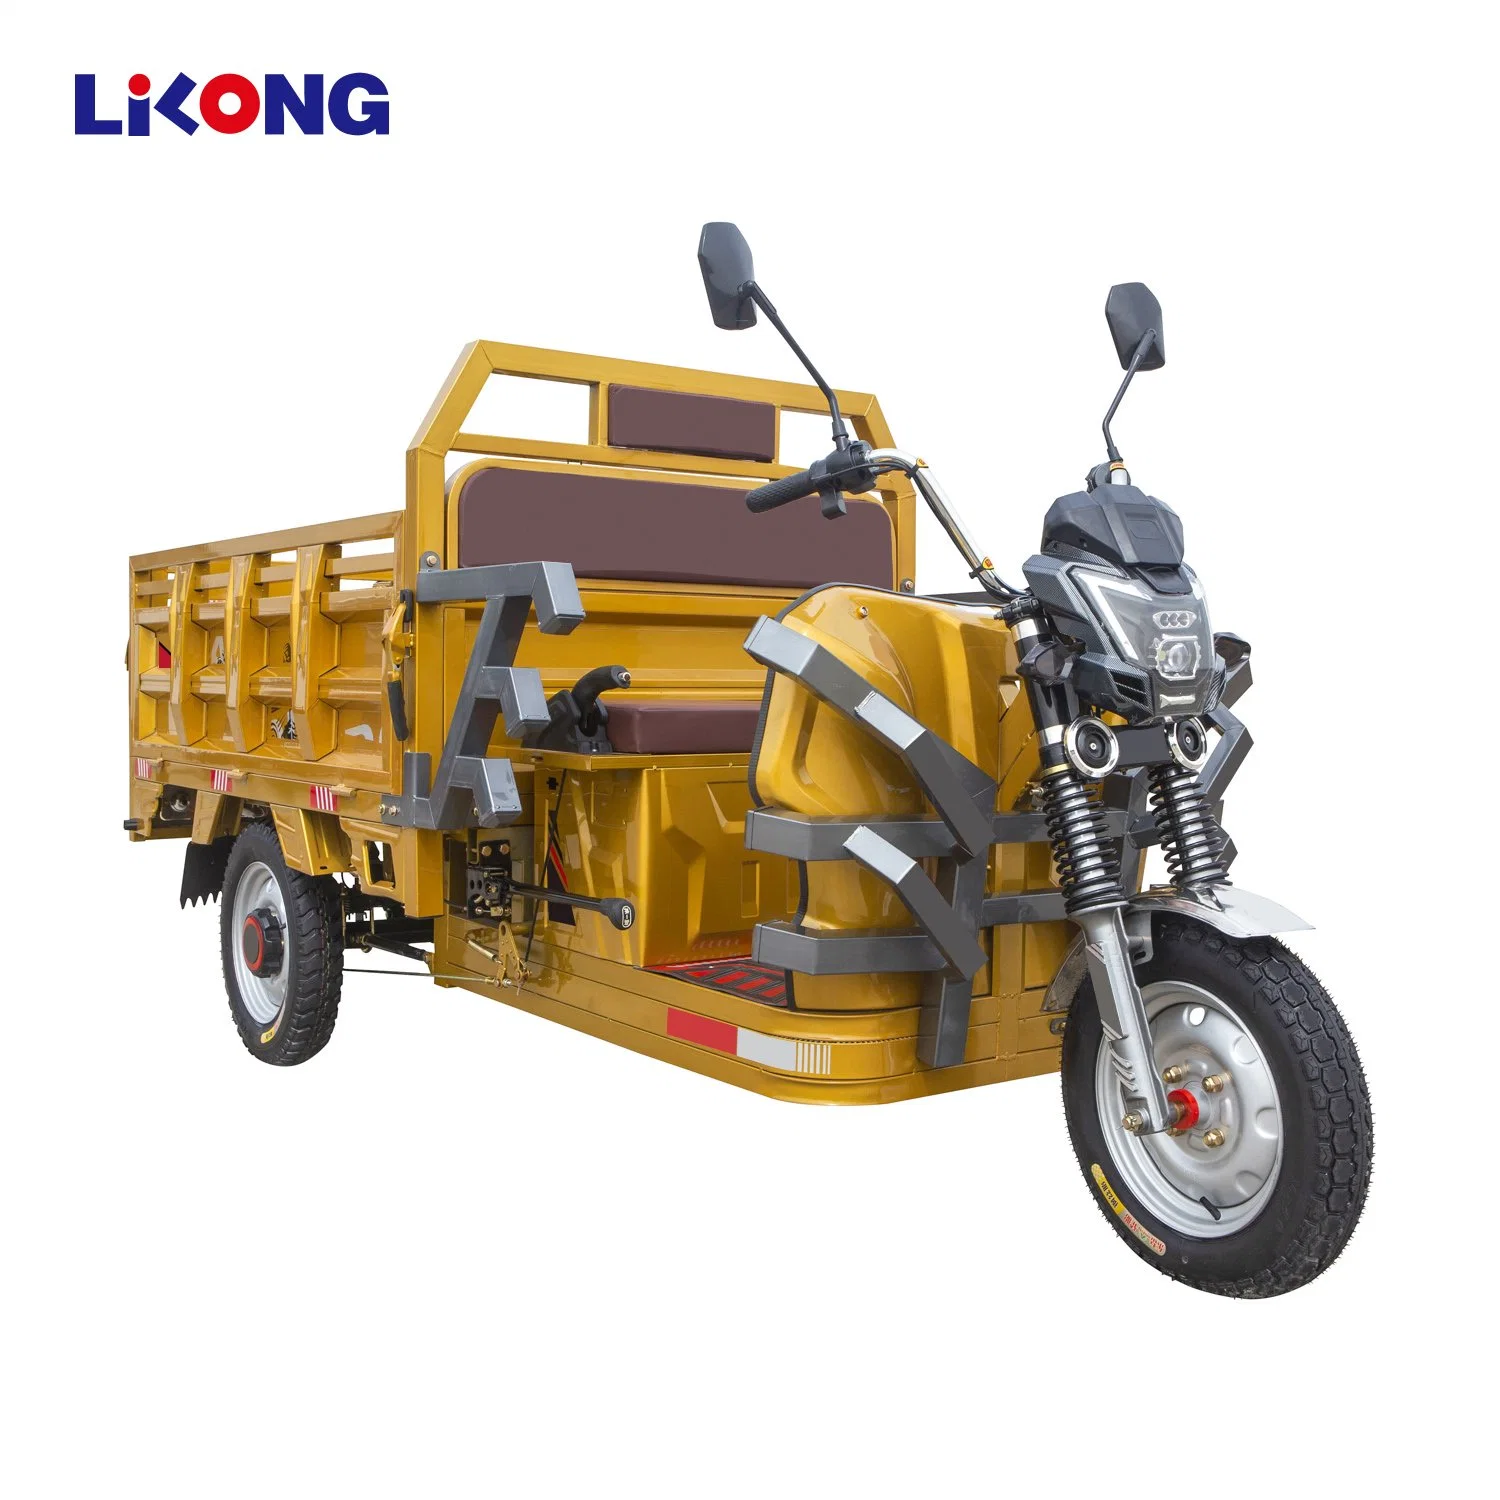 Lilong motocicleta eléctrica de 3 ruedas coche con cabina de transmisión de Scooter eléctrico triciclo de carga cerrado para los adultos